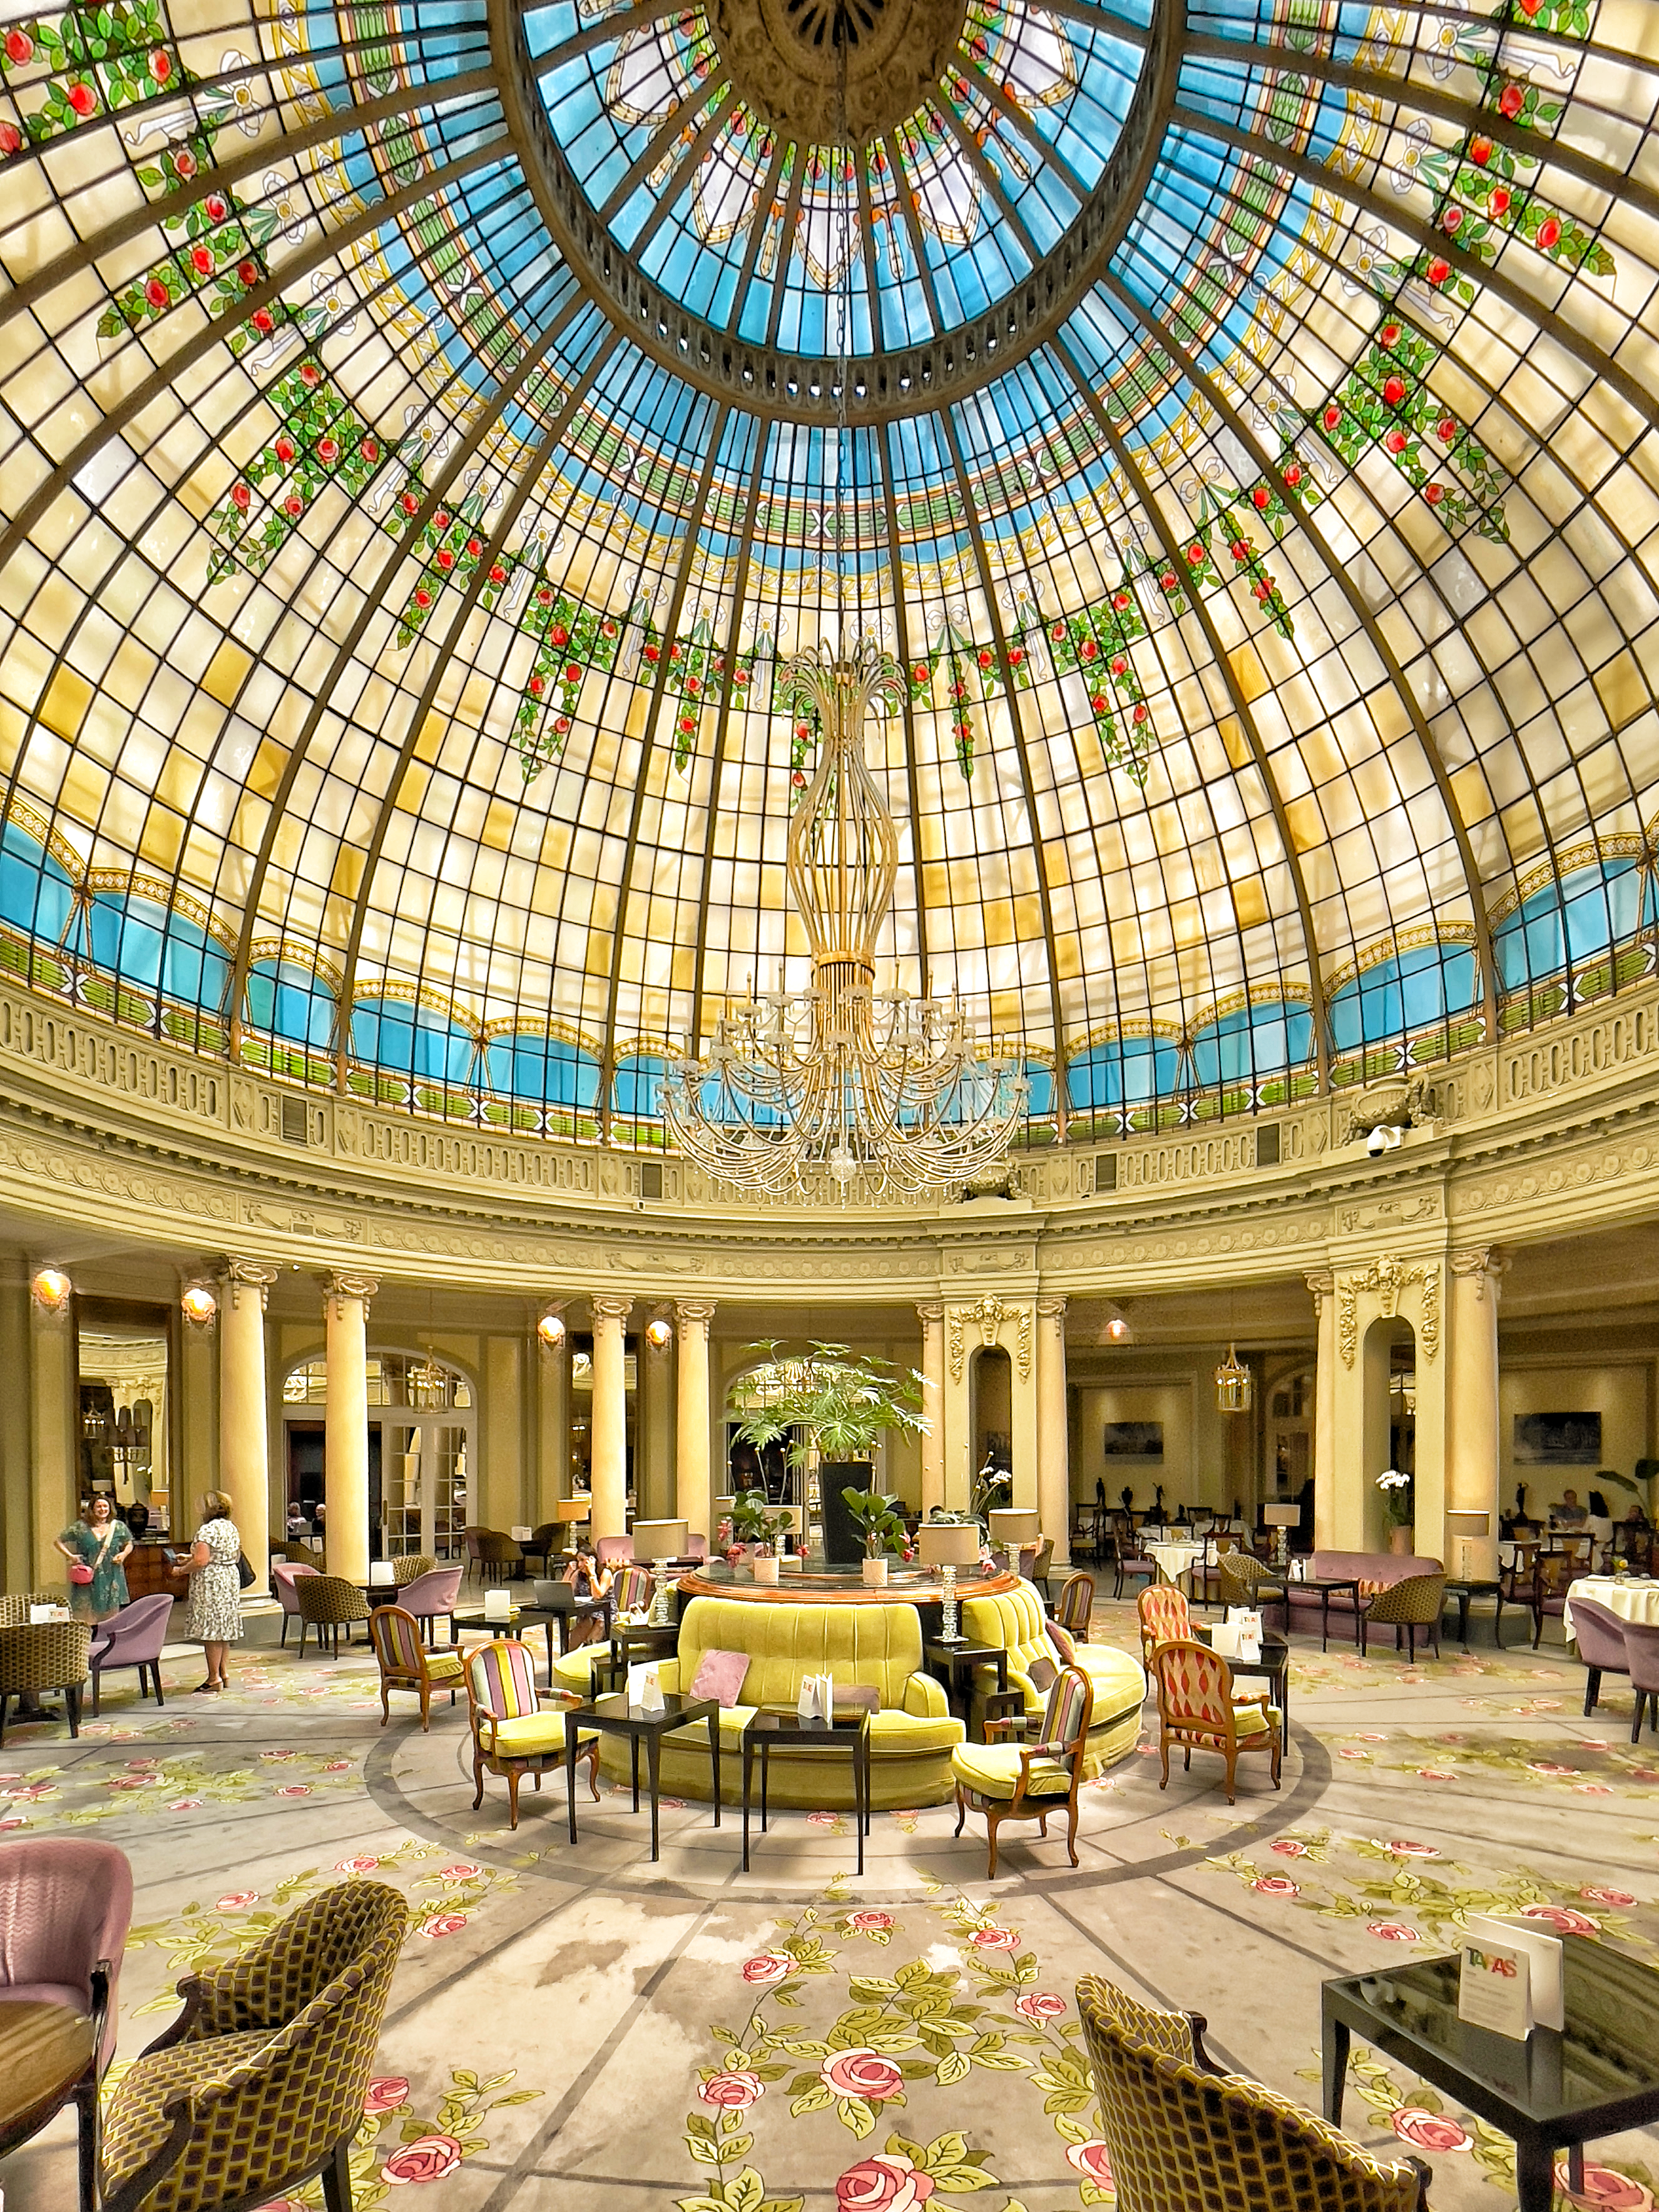 Imagen de la rotonda del hotel The Westin Palace, donde se exponen las fotografías.